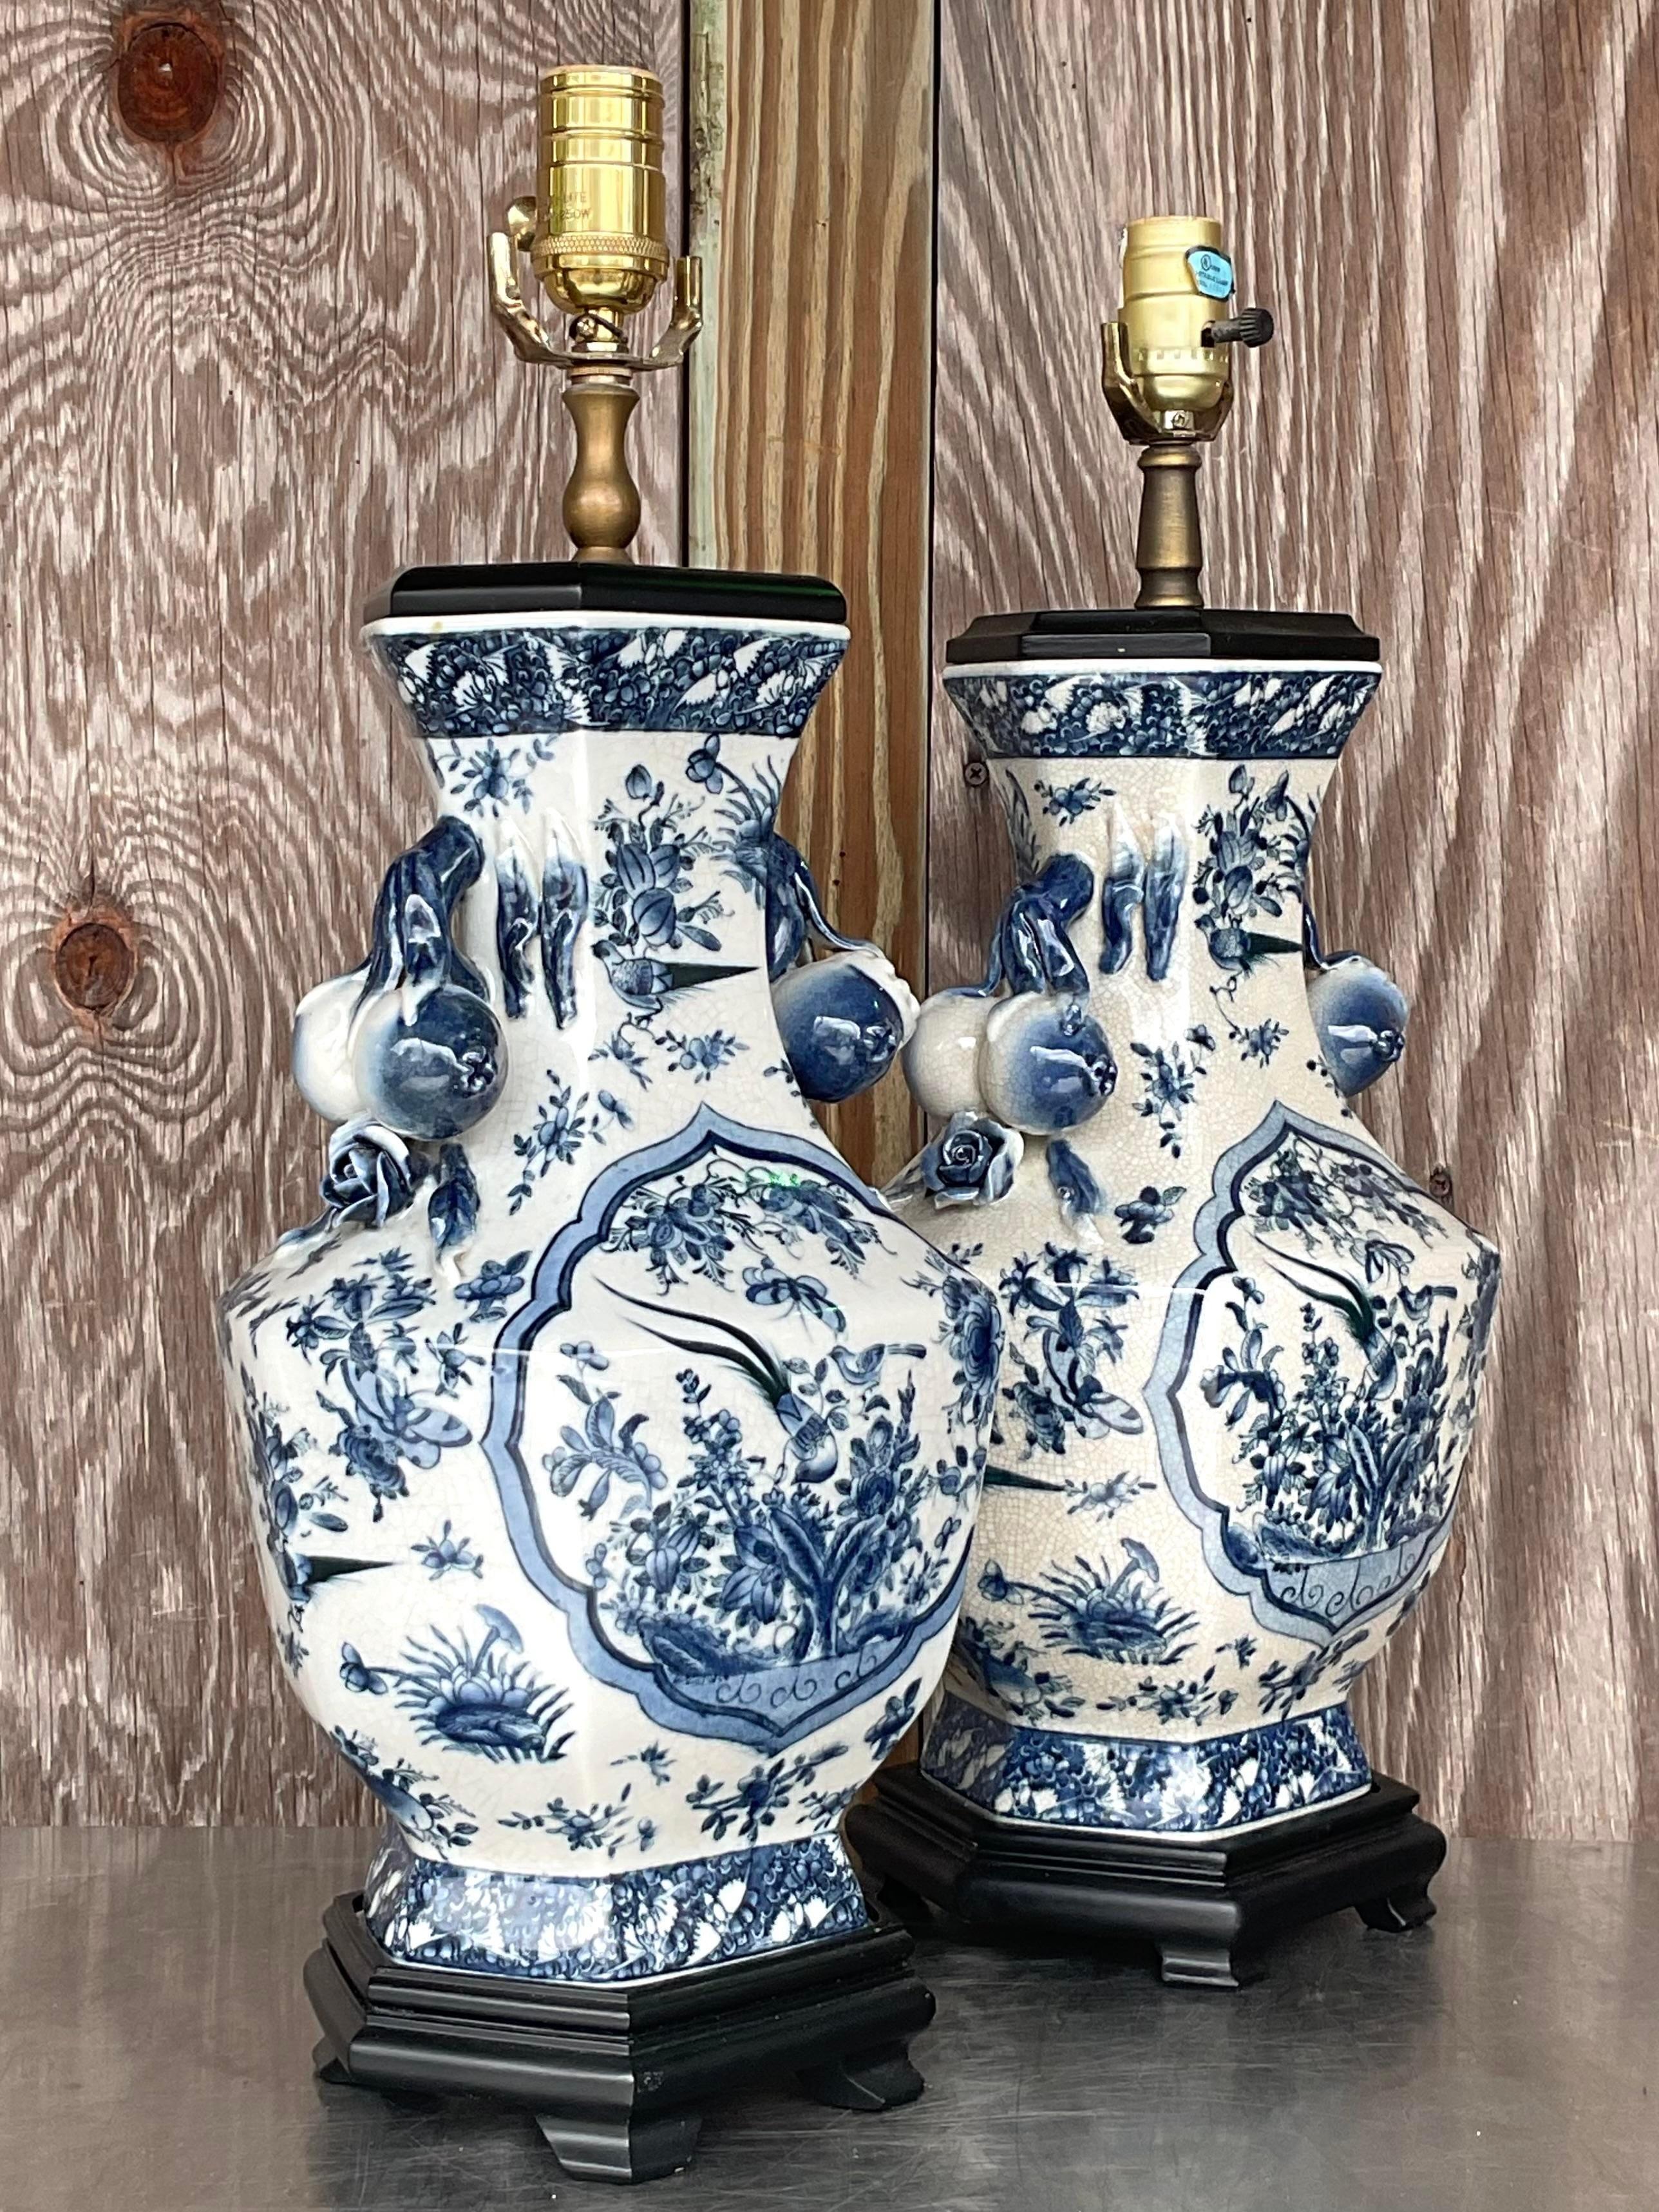 Illuminez avec élégance en utilisant nos lampes en céramique Chinoiserie asiatique vintage - une paire. Ces lampes exquises mettent en valeur le design traditionnel de la Chinoiserie, alliant l'art asiatique à la sophistication américaine. Un duo